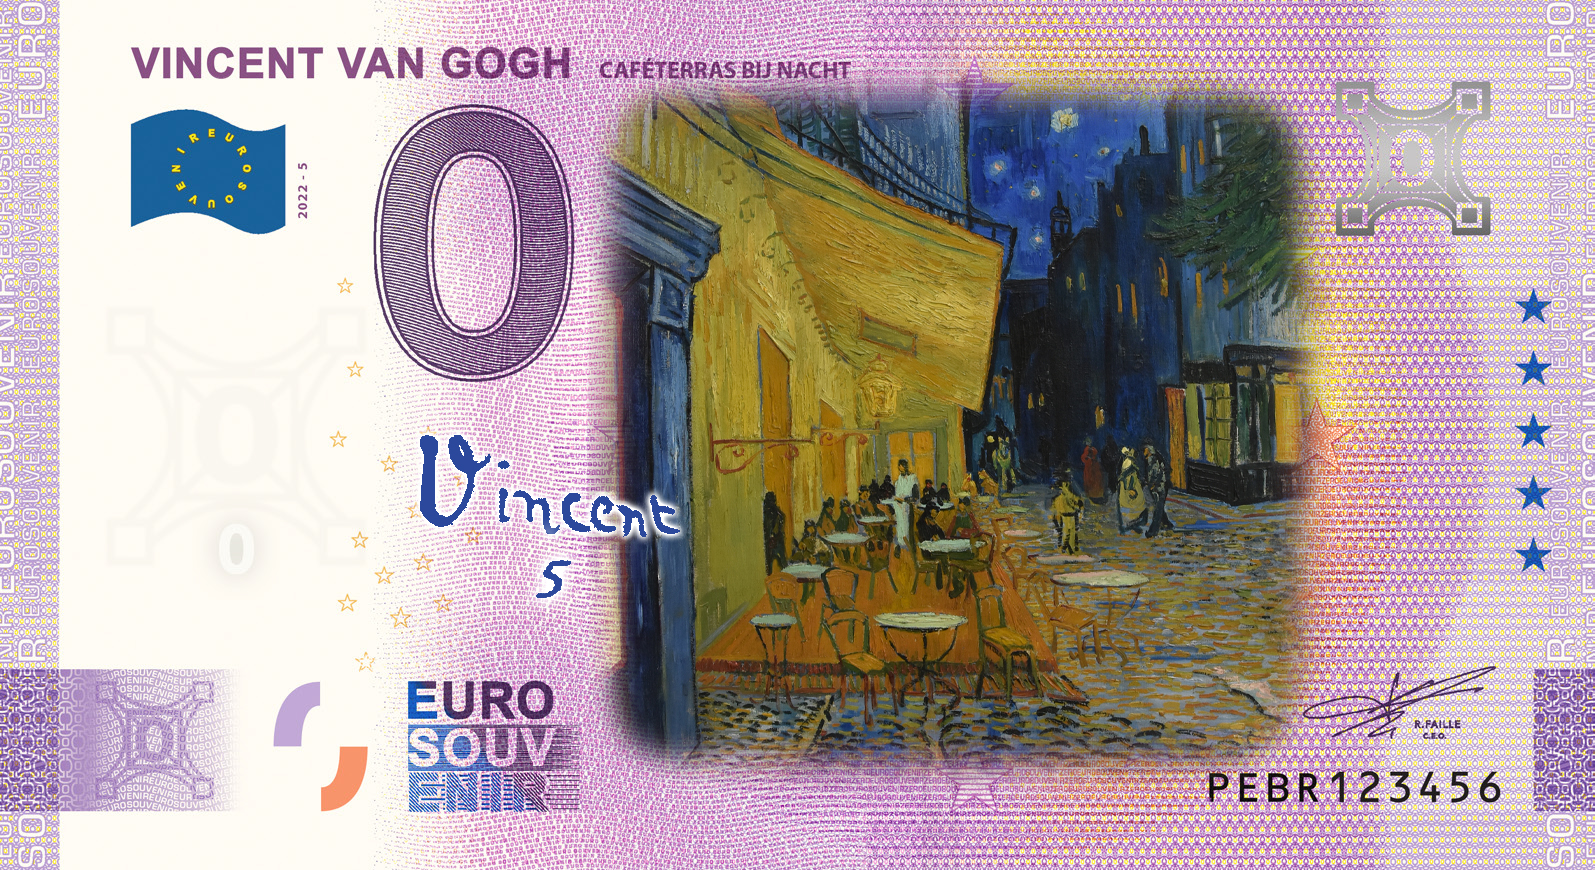 0 Euro biljet Nederland 2022 - Vincent van Gogh V Caféterras bij nacht KLEUR